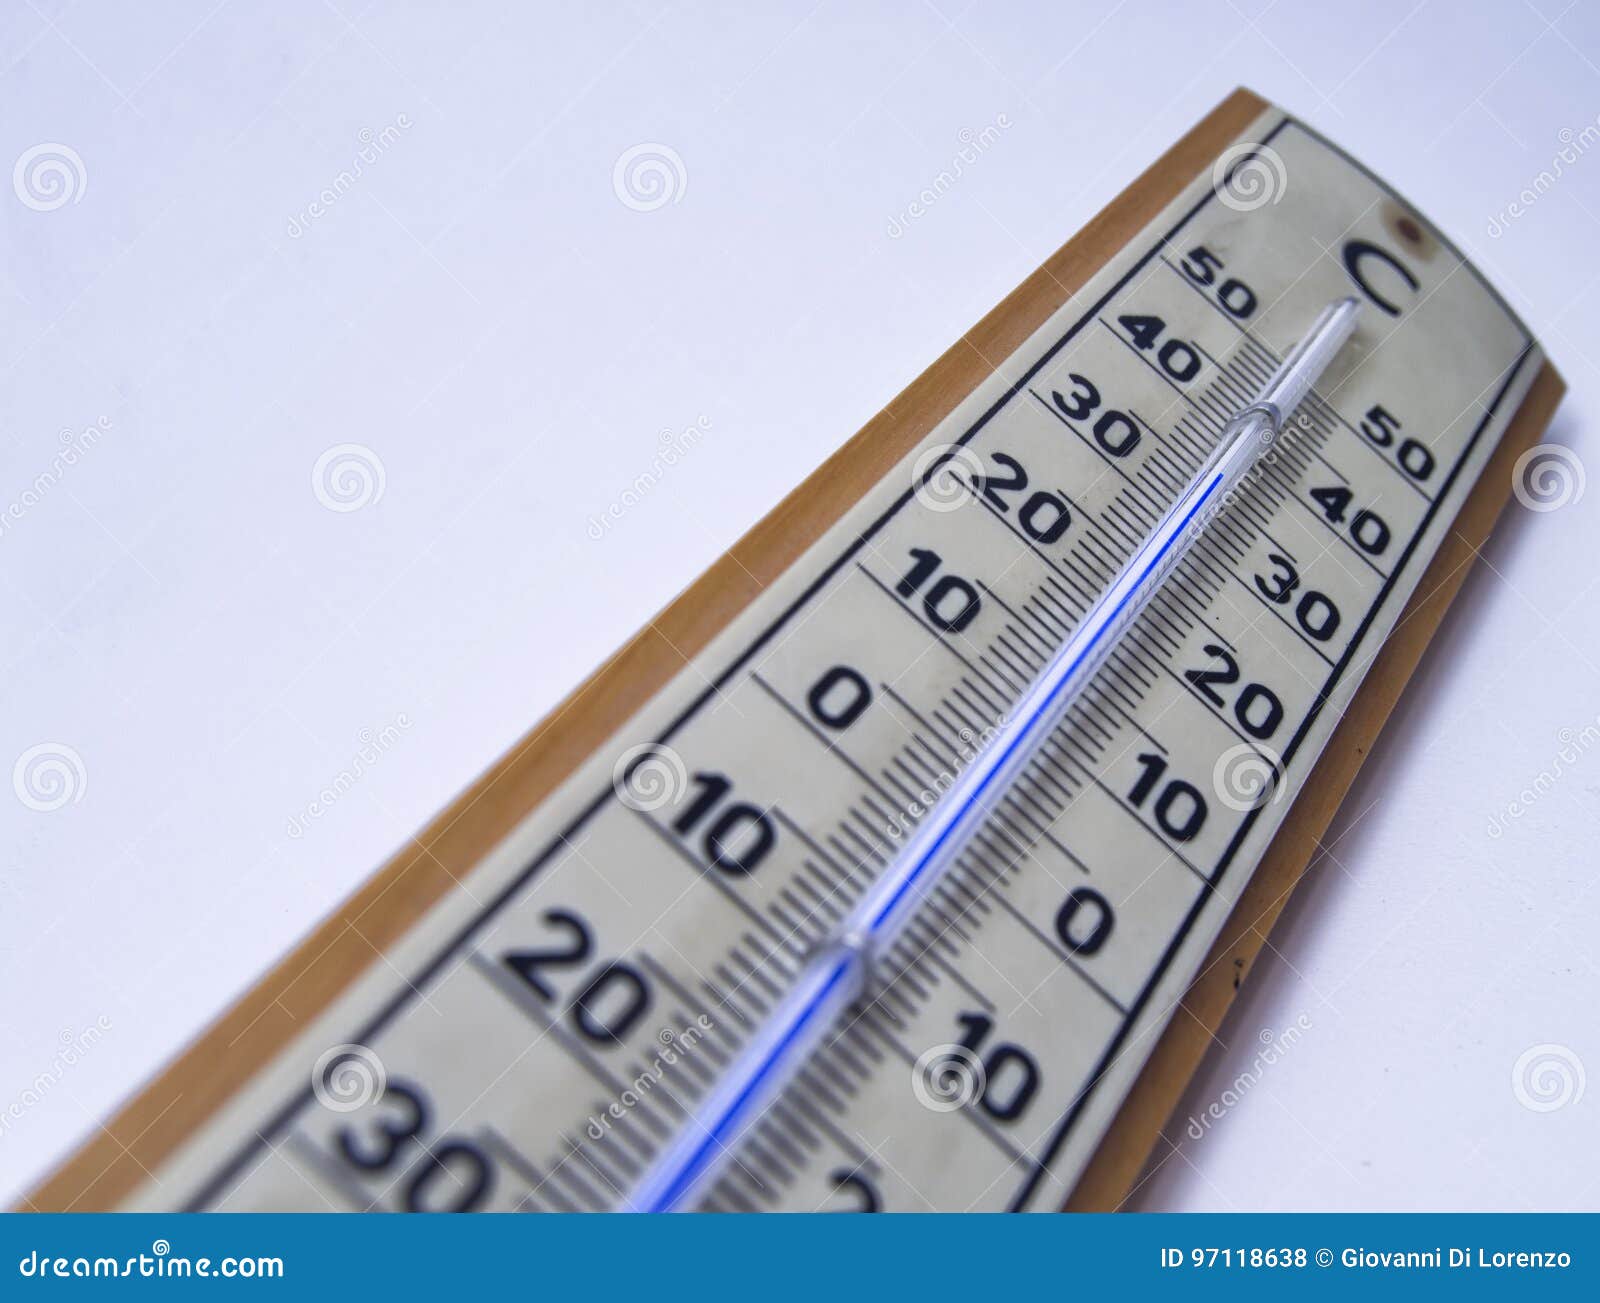 Misura Di Temperatura Ambiente Da Un Termometro a Mercurio Fotografia Stock  - Immagine di esterno, oggetto: 97118638